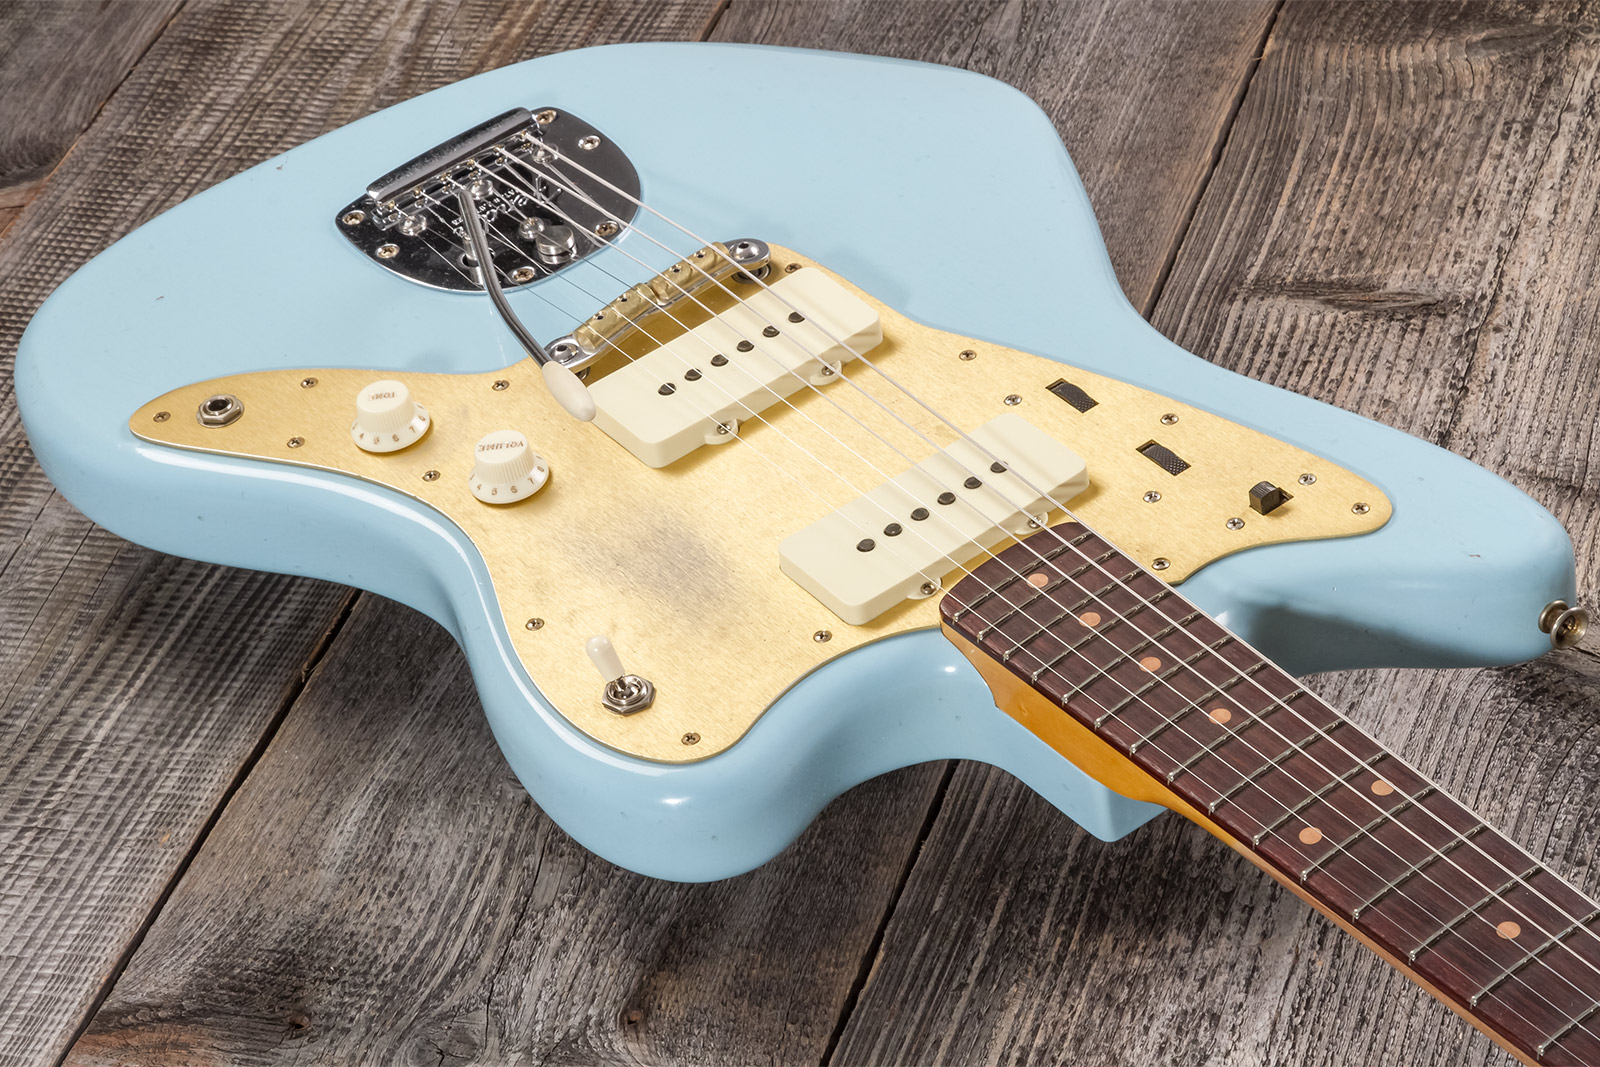 Fender Custom Shop Jazzmaster 1959 250k 2s Trem Rw #cz576203 - Journeyman Relic Aged Daphne Blue - Retro-rock elektrische gitaar - Variation 2